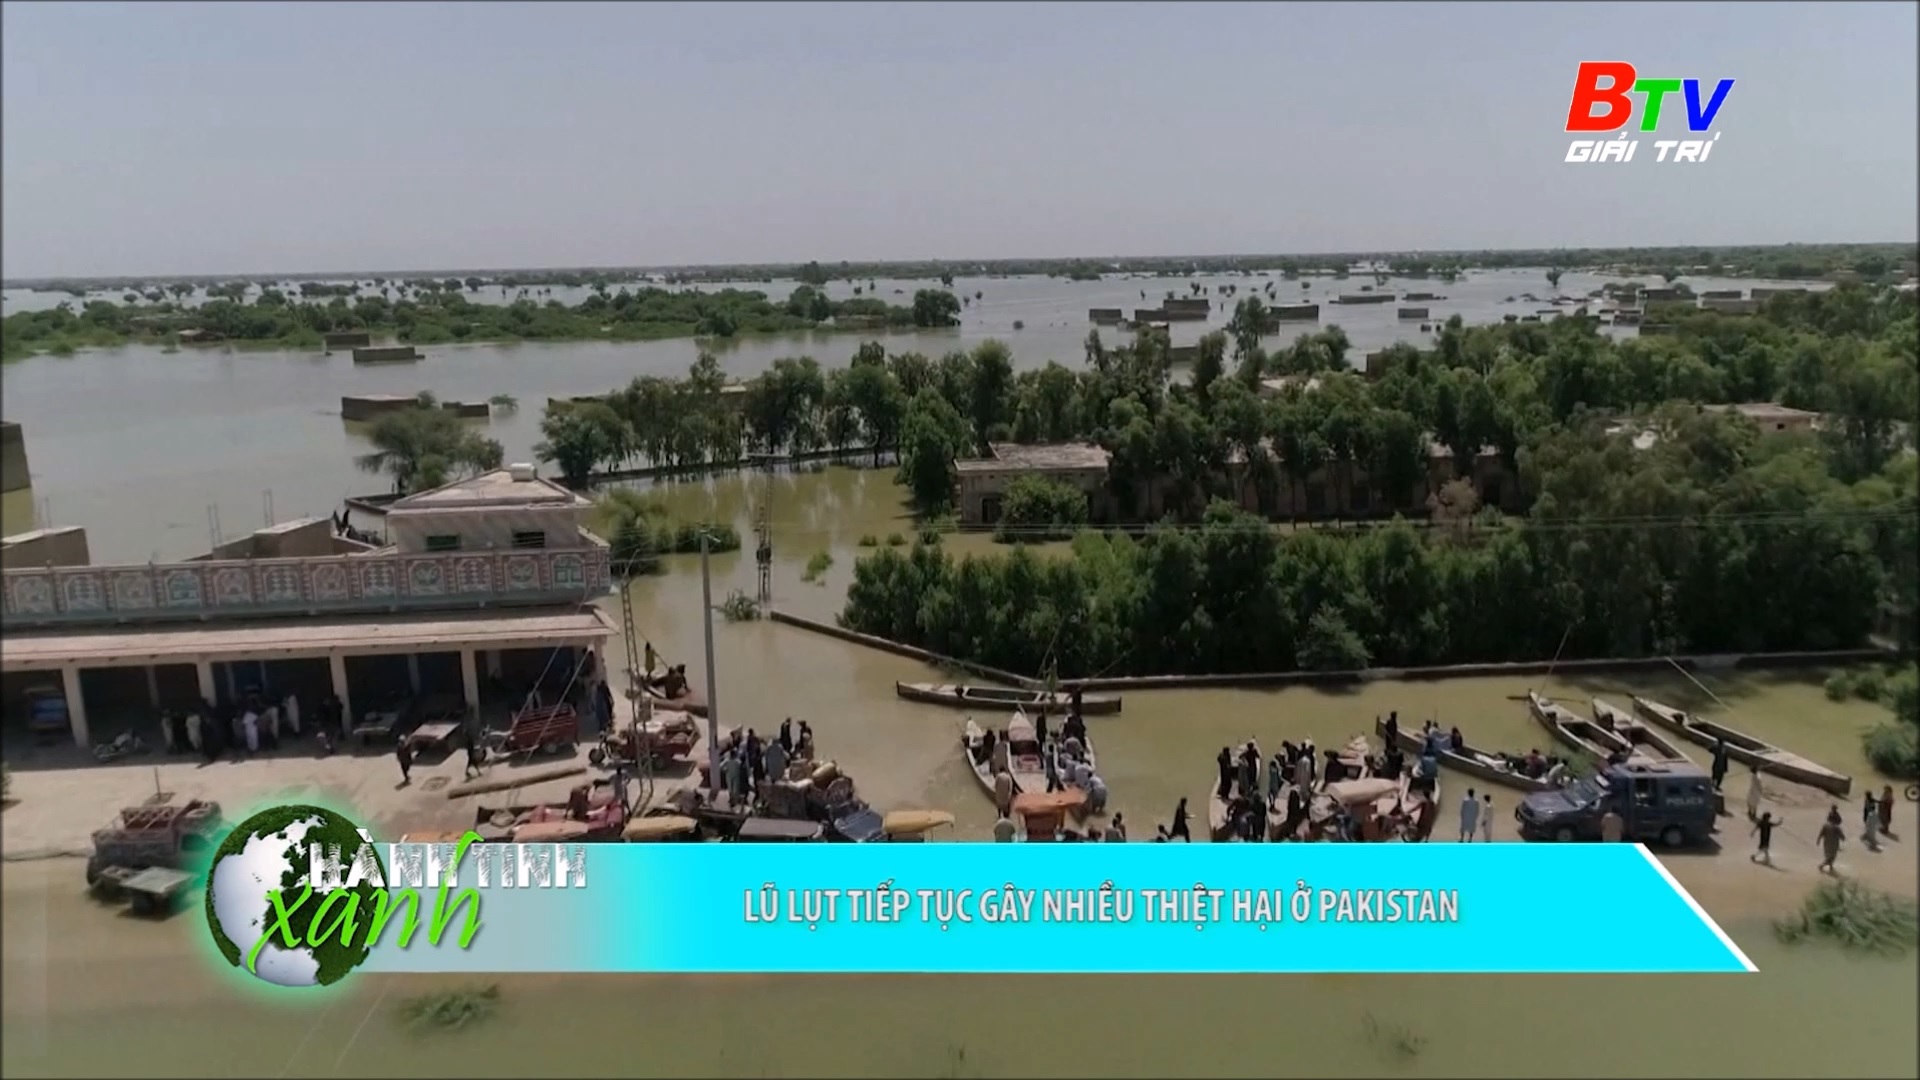 Lũ lụt tiếp tục gây nhiều thiệt hại ở Pakistan